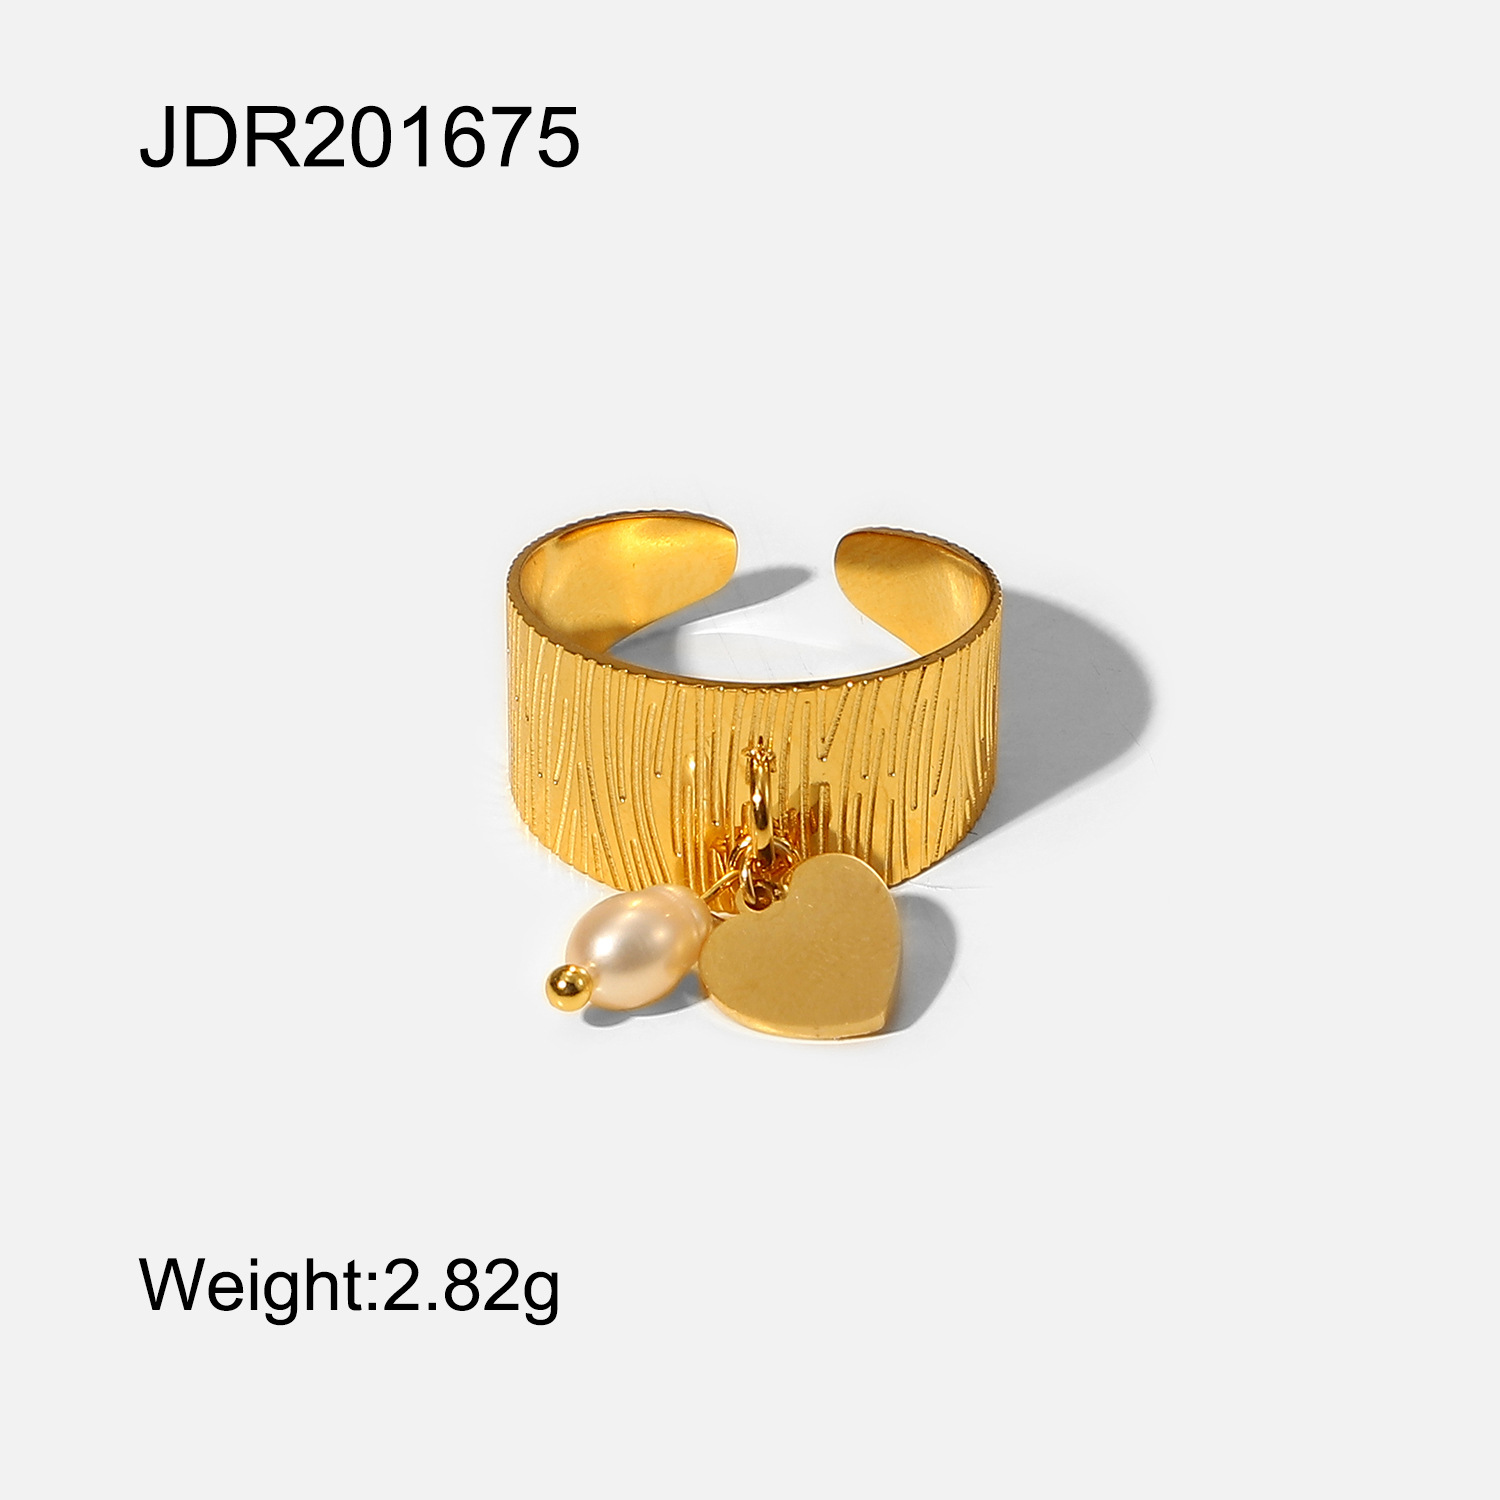 2:JDR201675